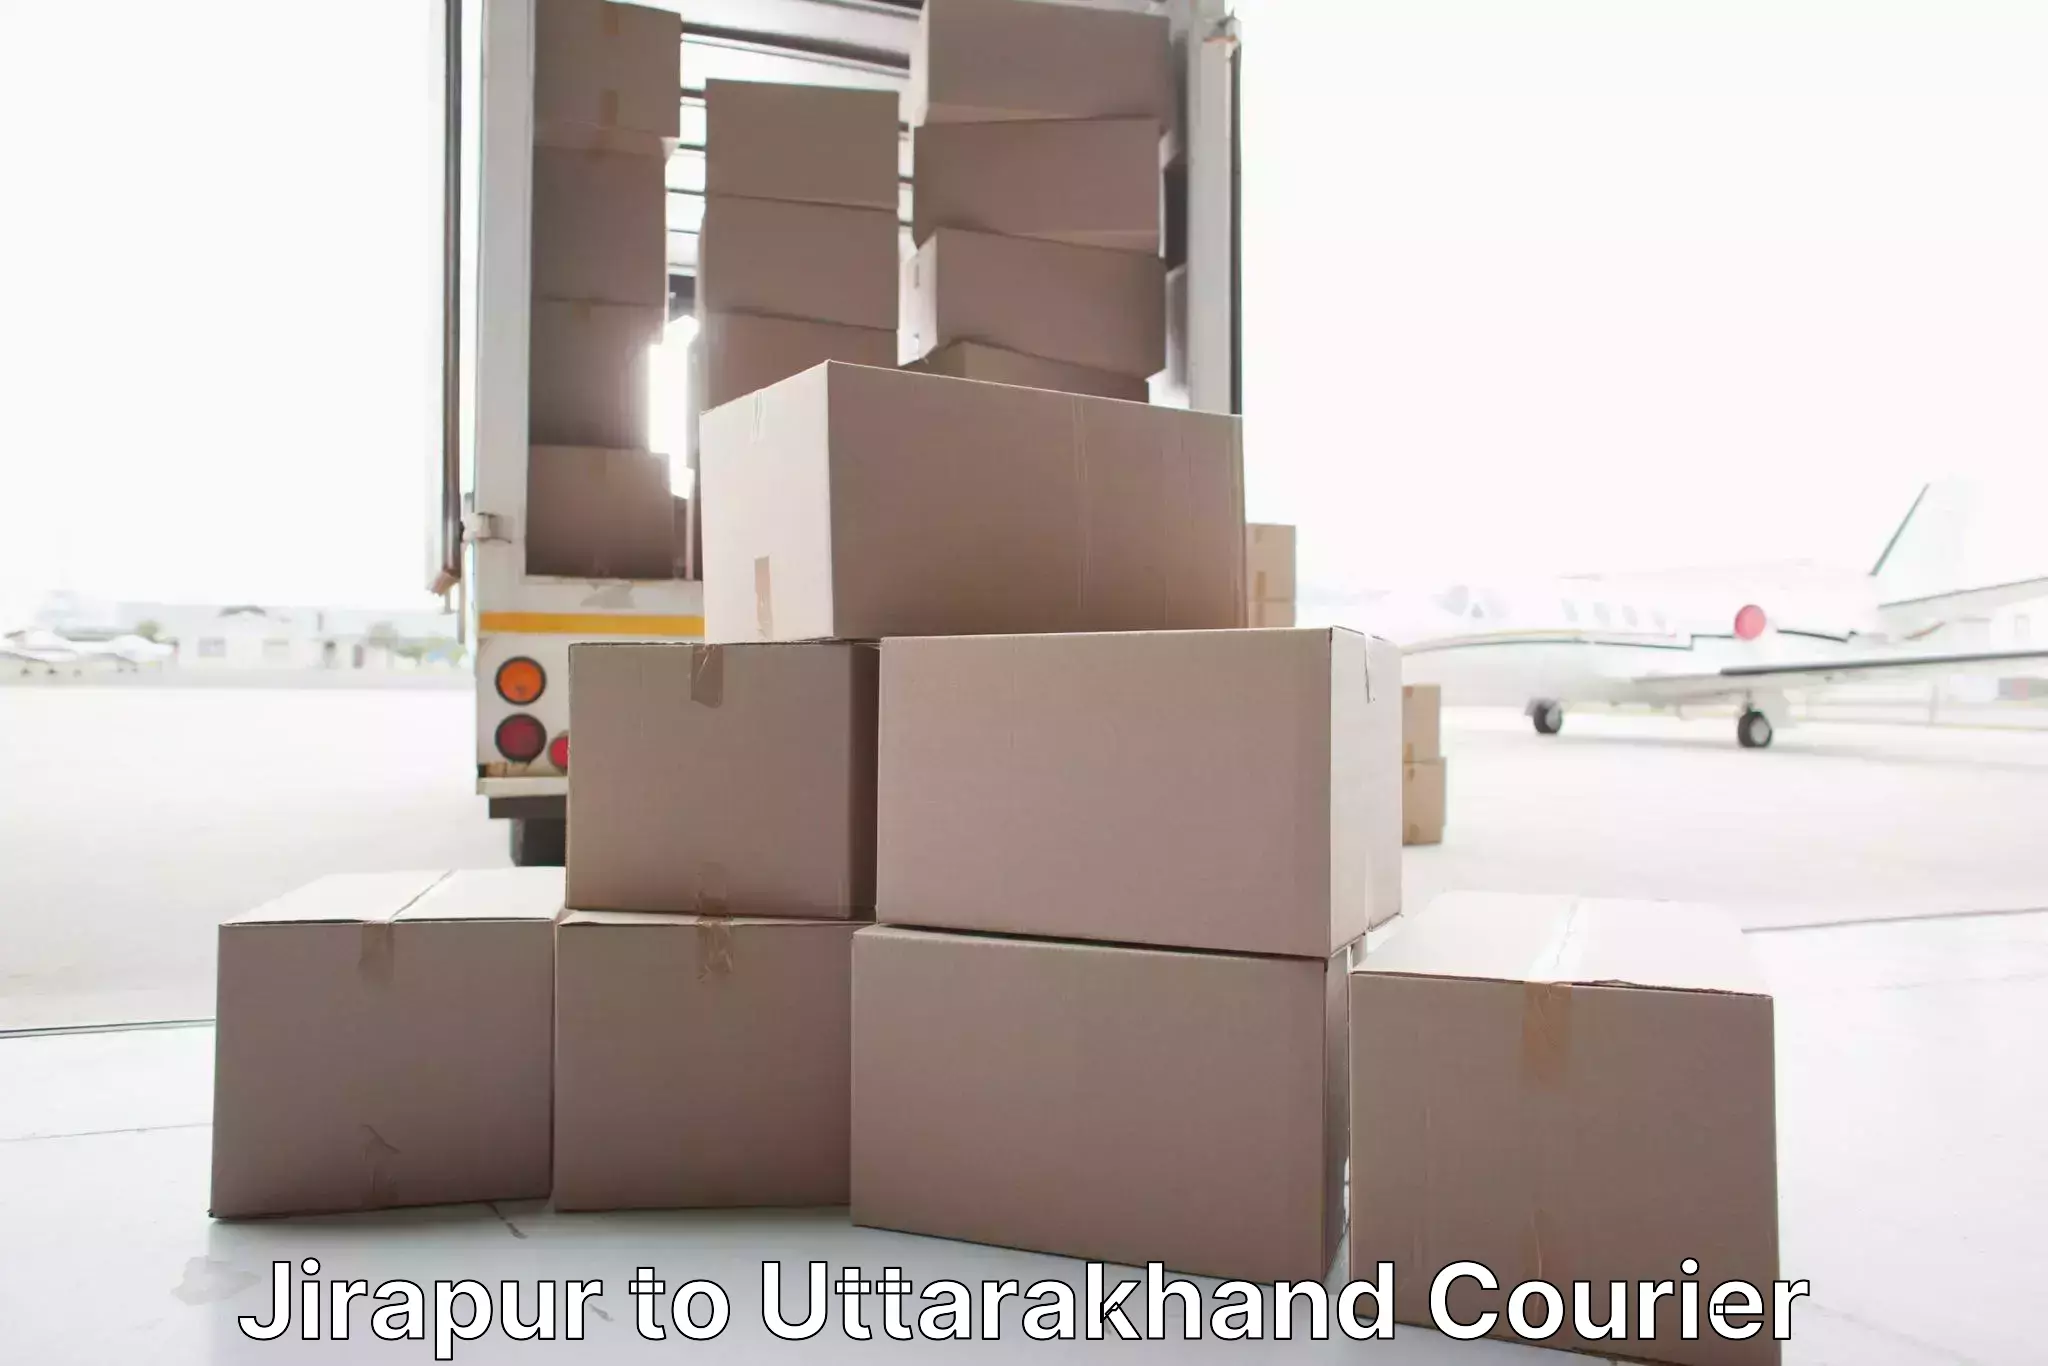 Furniture transport experts Jirapur to Lansdowne